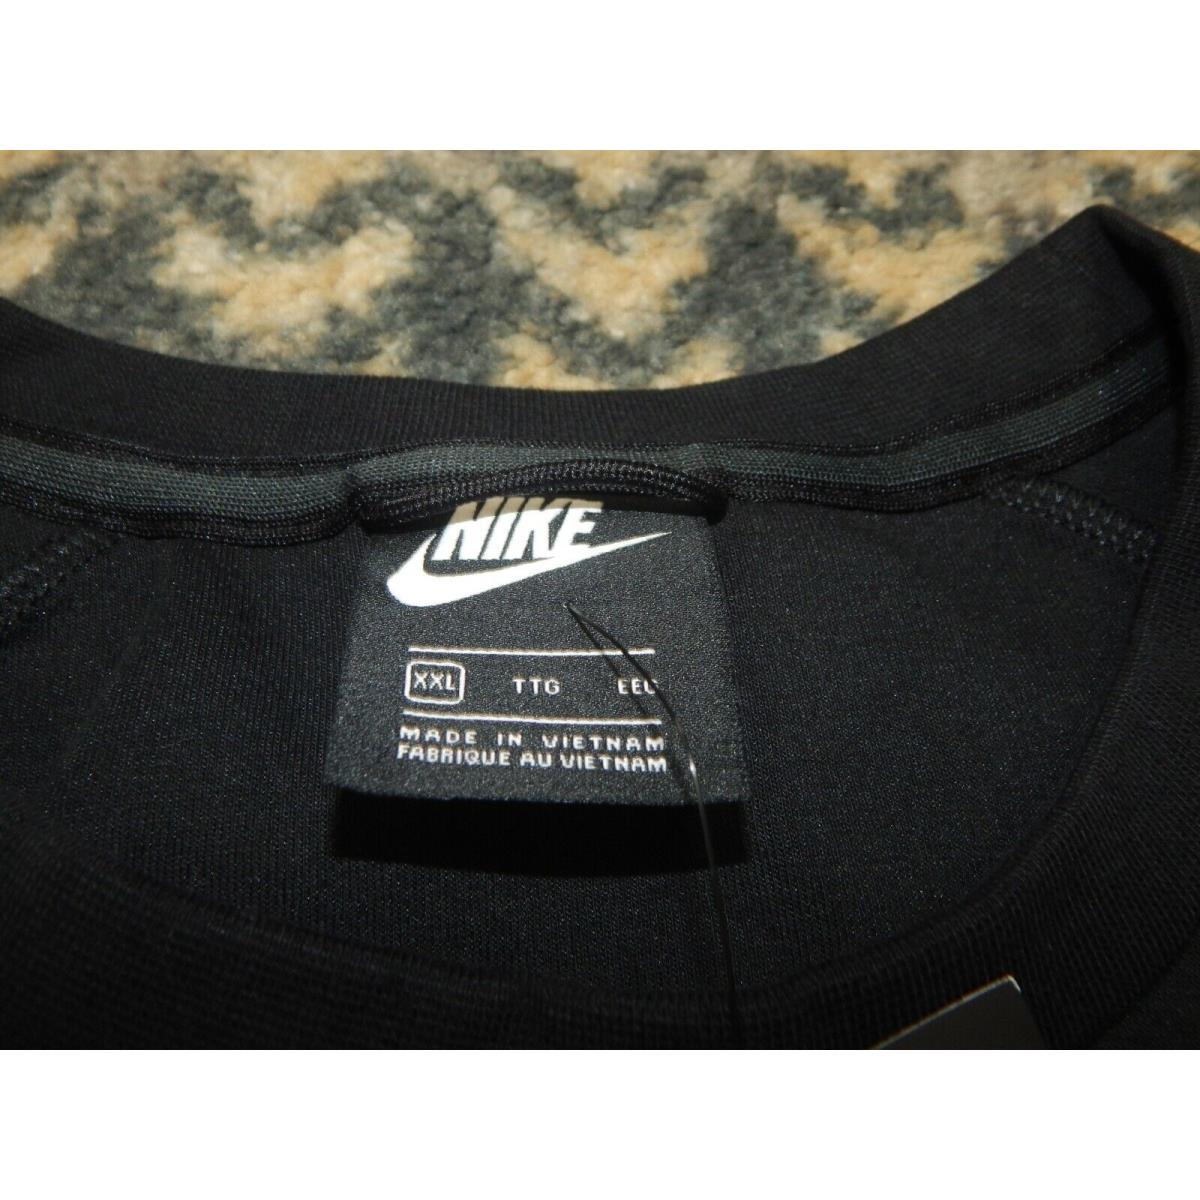 Nike clothing  - Black 4